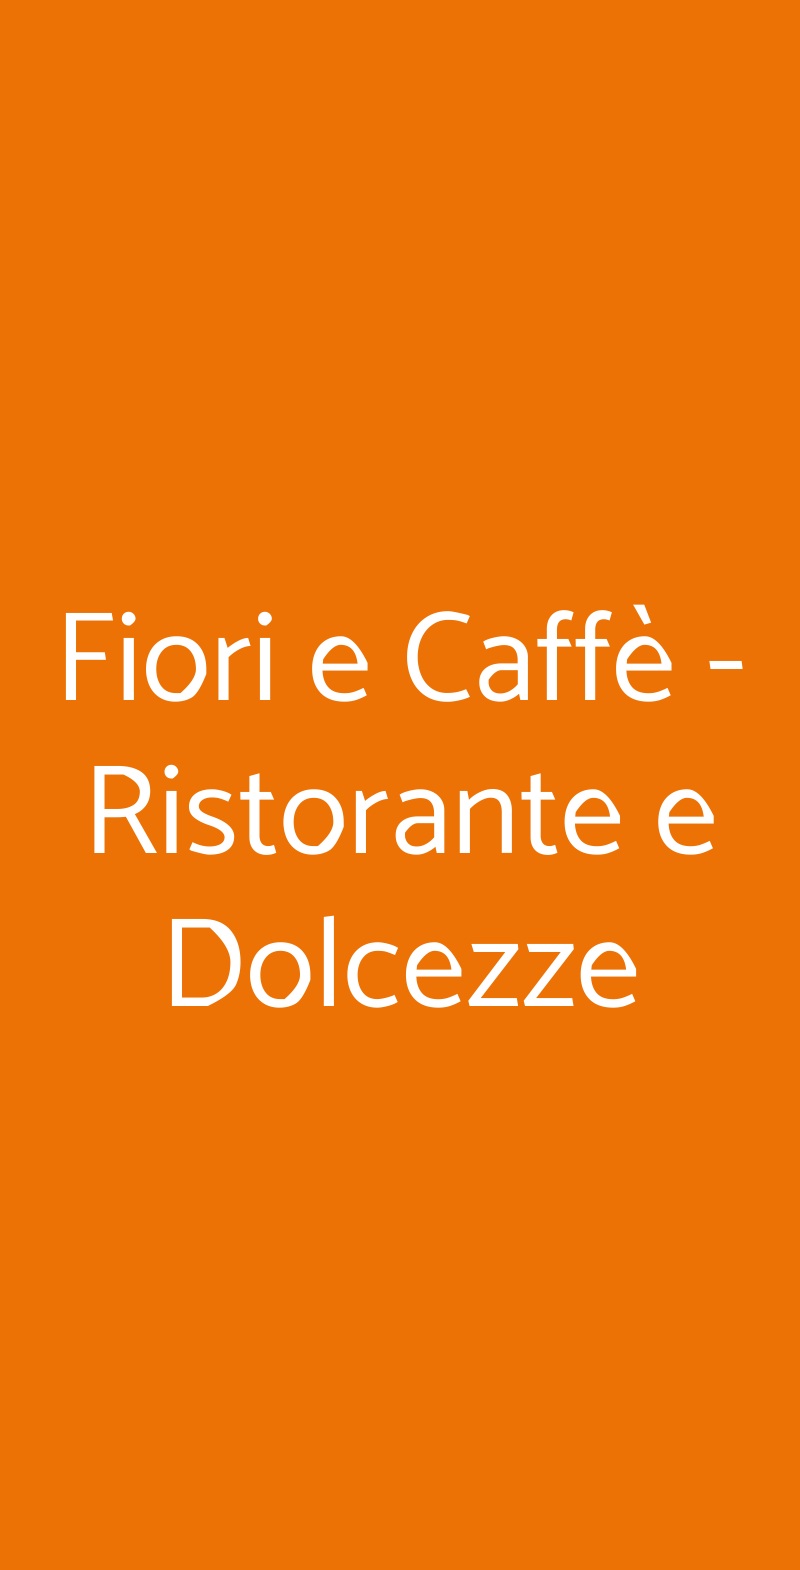 Fiori e Caffè - Ristorante e Dolcezze Torino menù 1 pagina